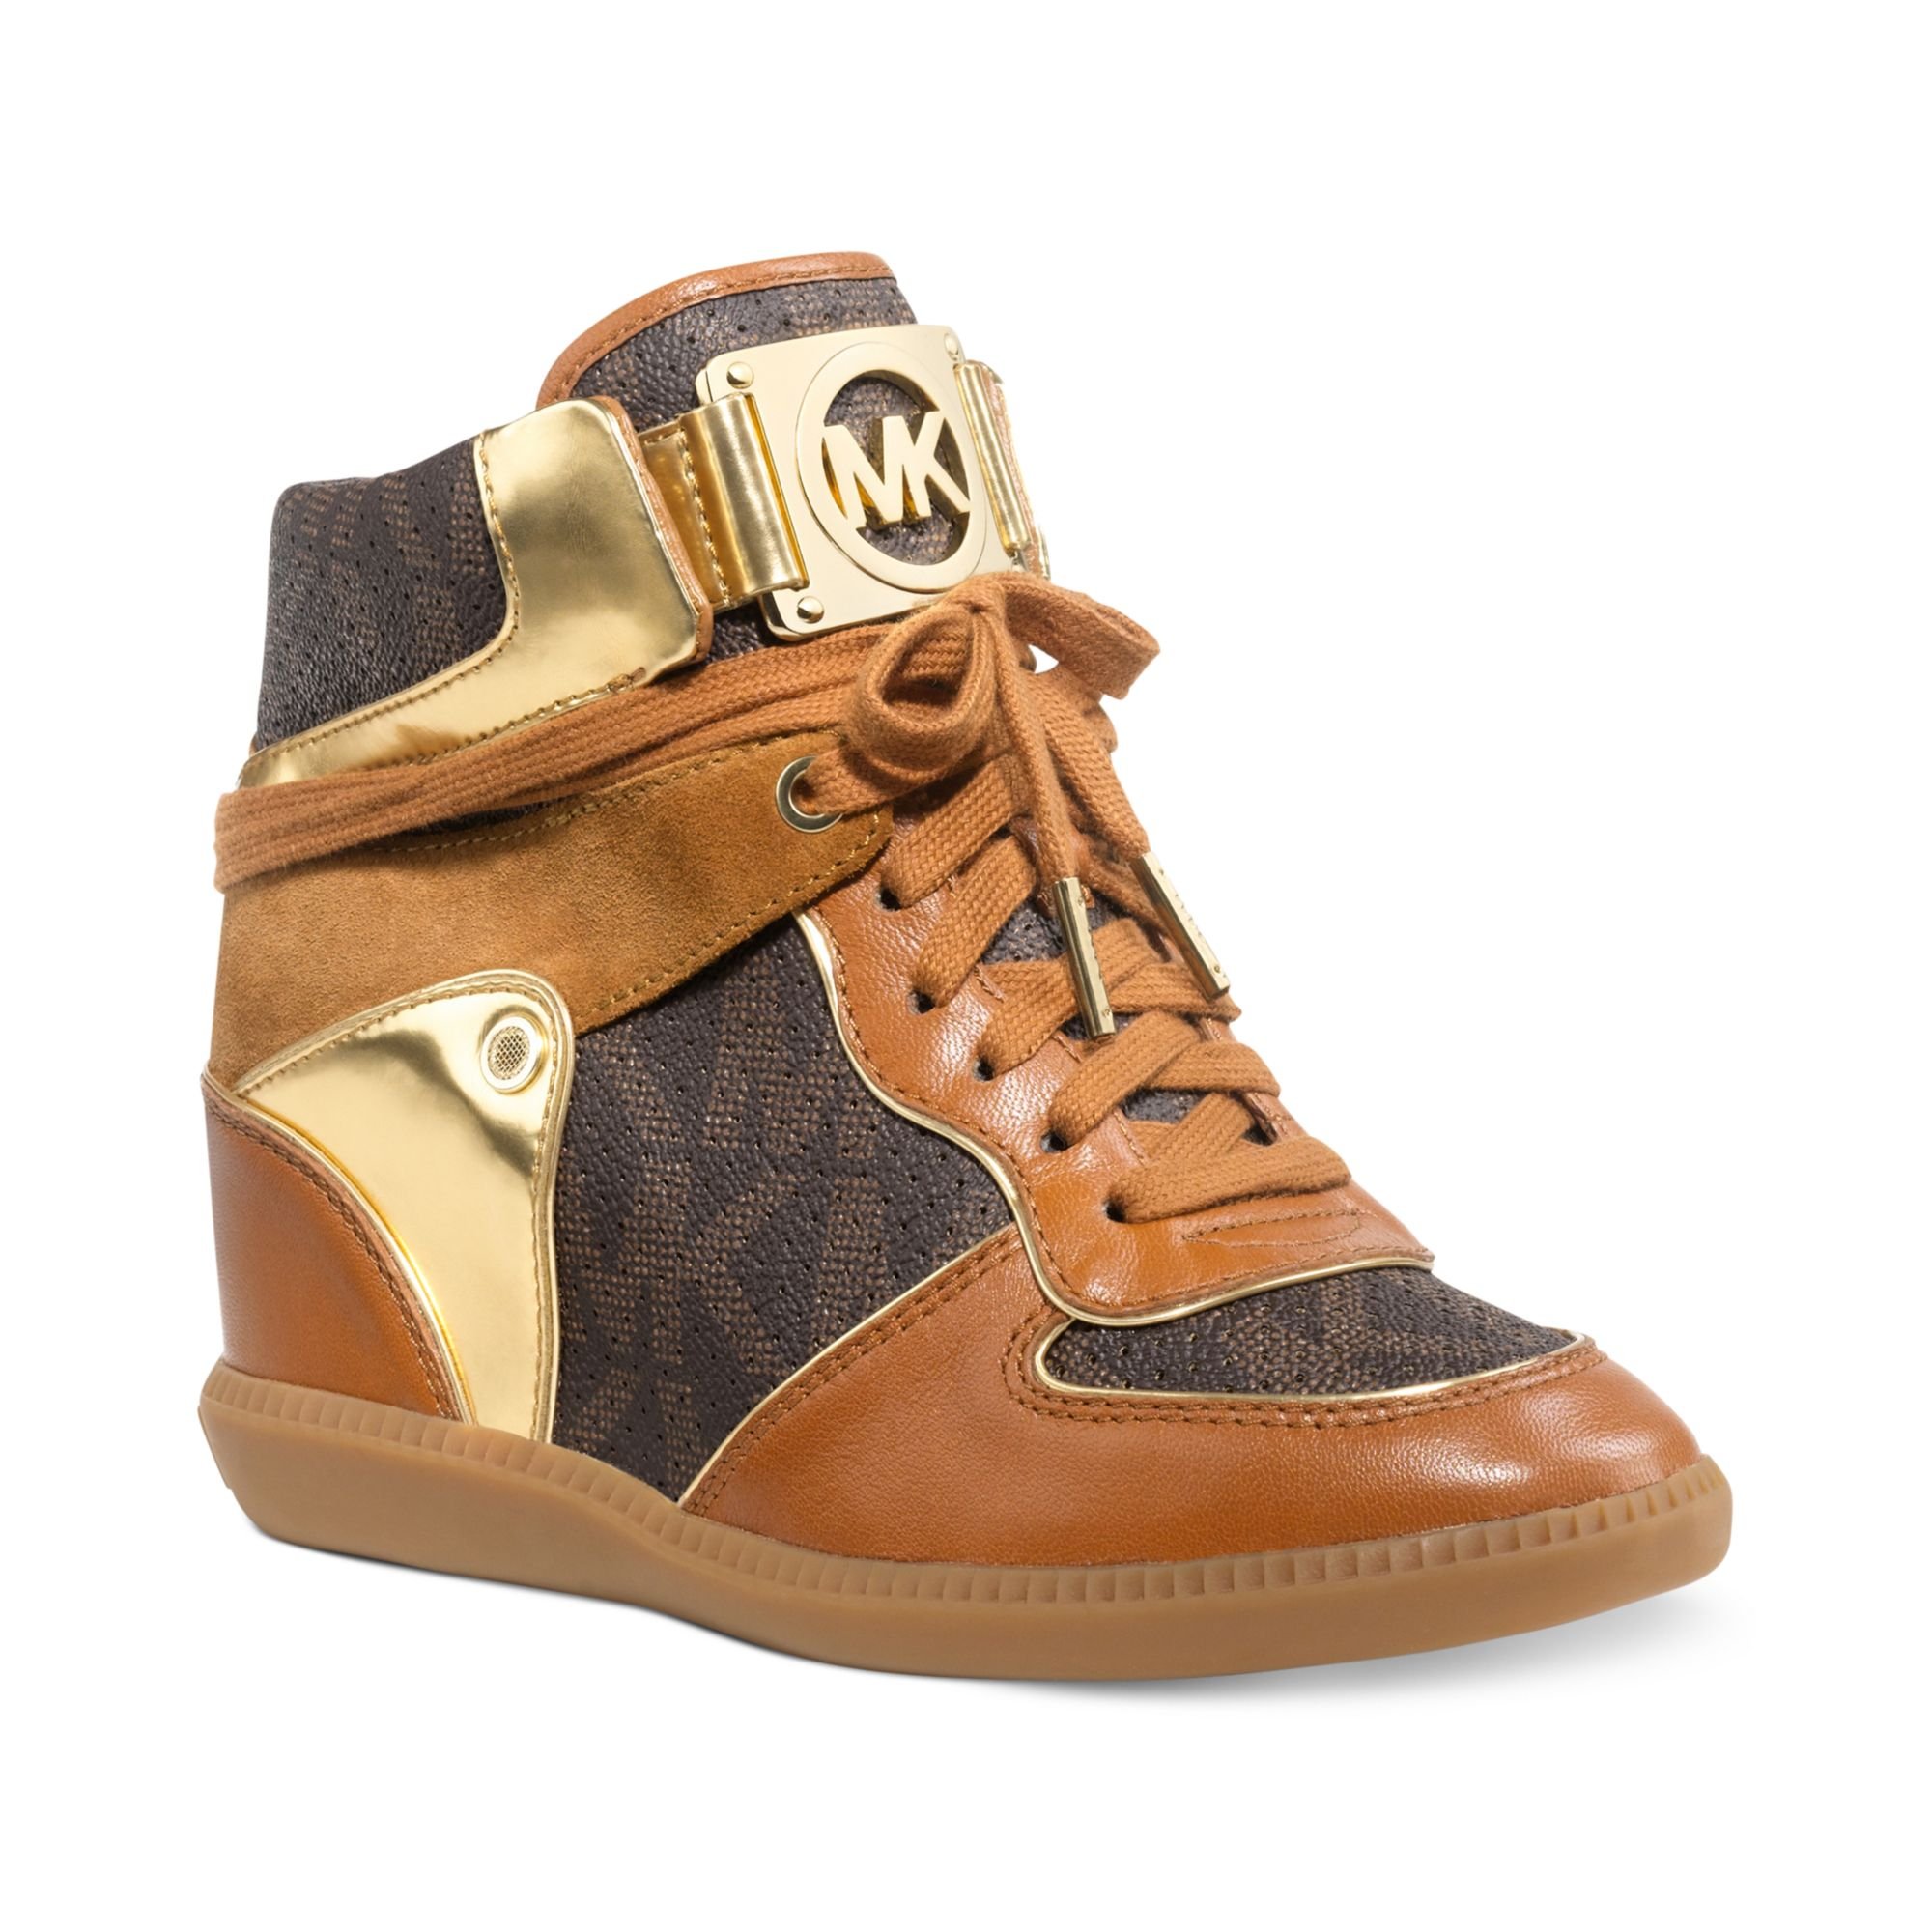 Michael Kors Nikko High Top Wedge Sneakers in Brown - Lyst